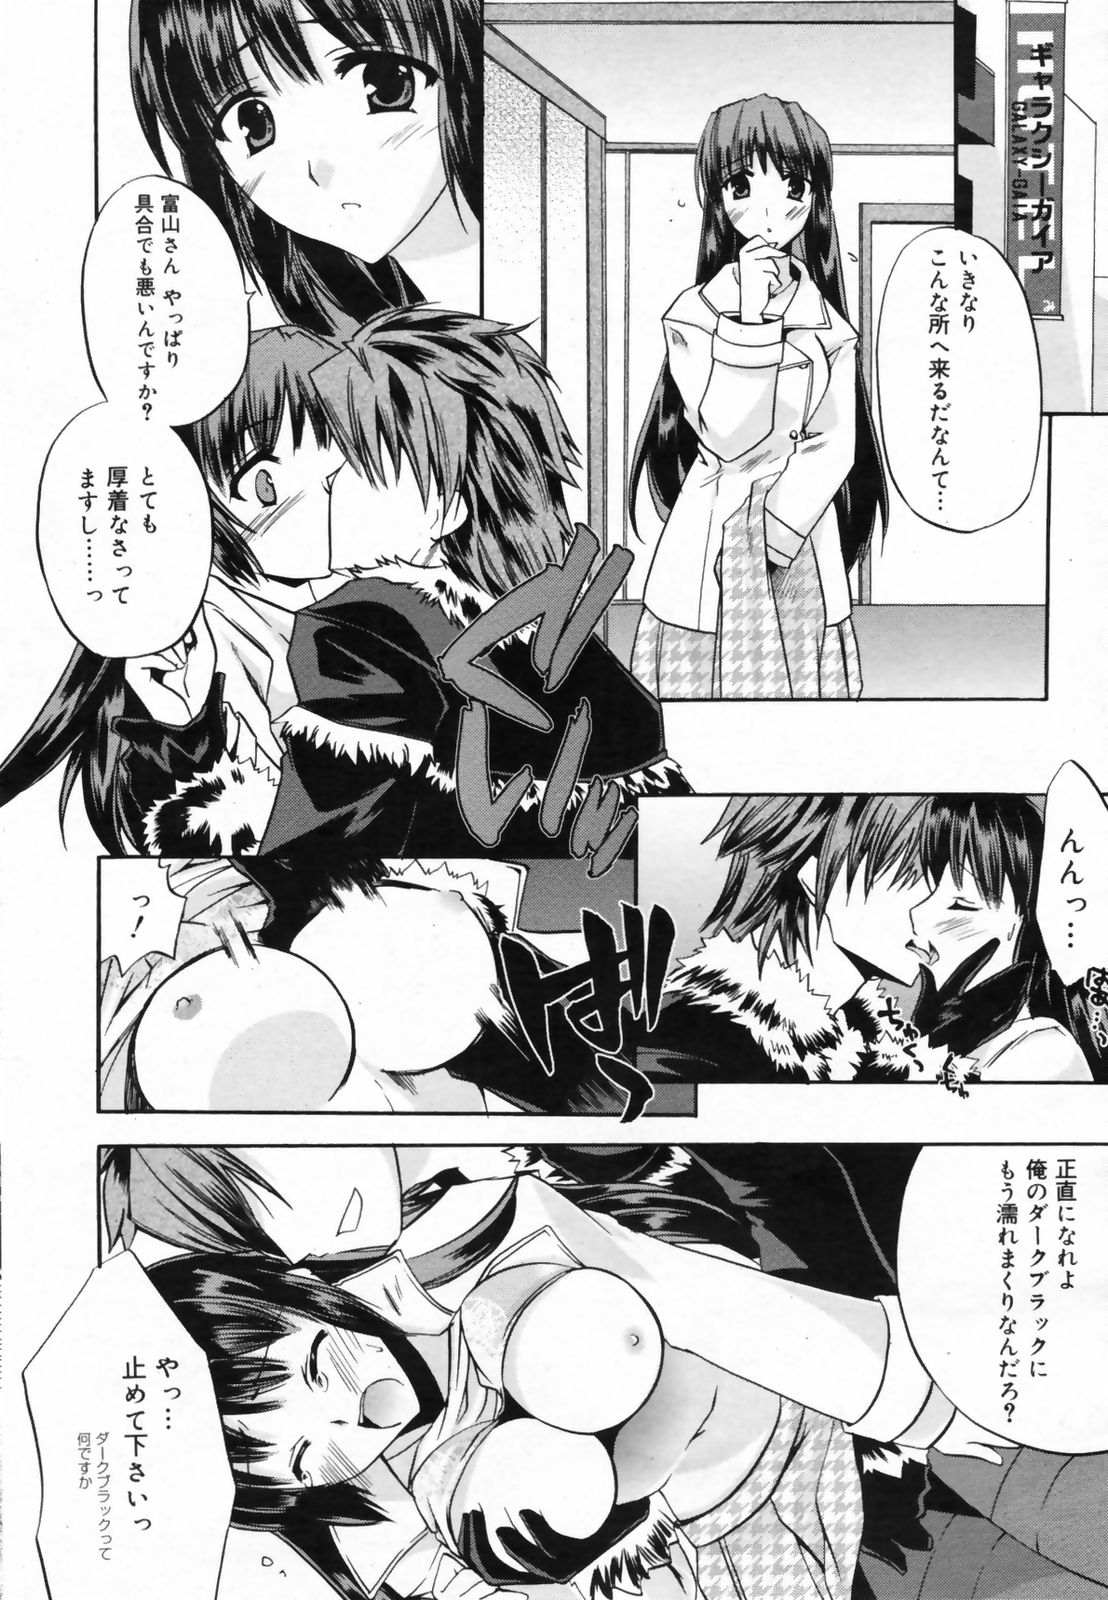 Manga Bangaichi 2009-02 Vol. 234 page 46 full